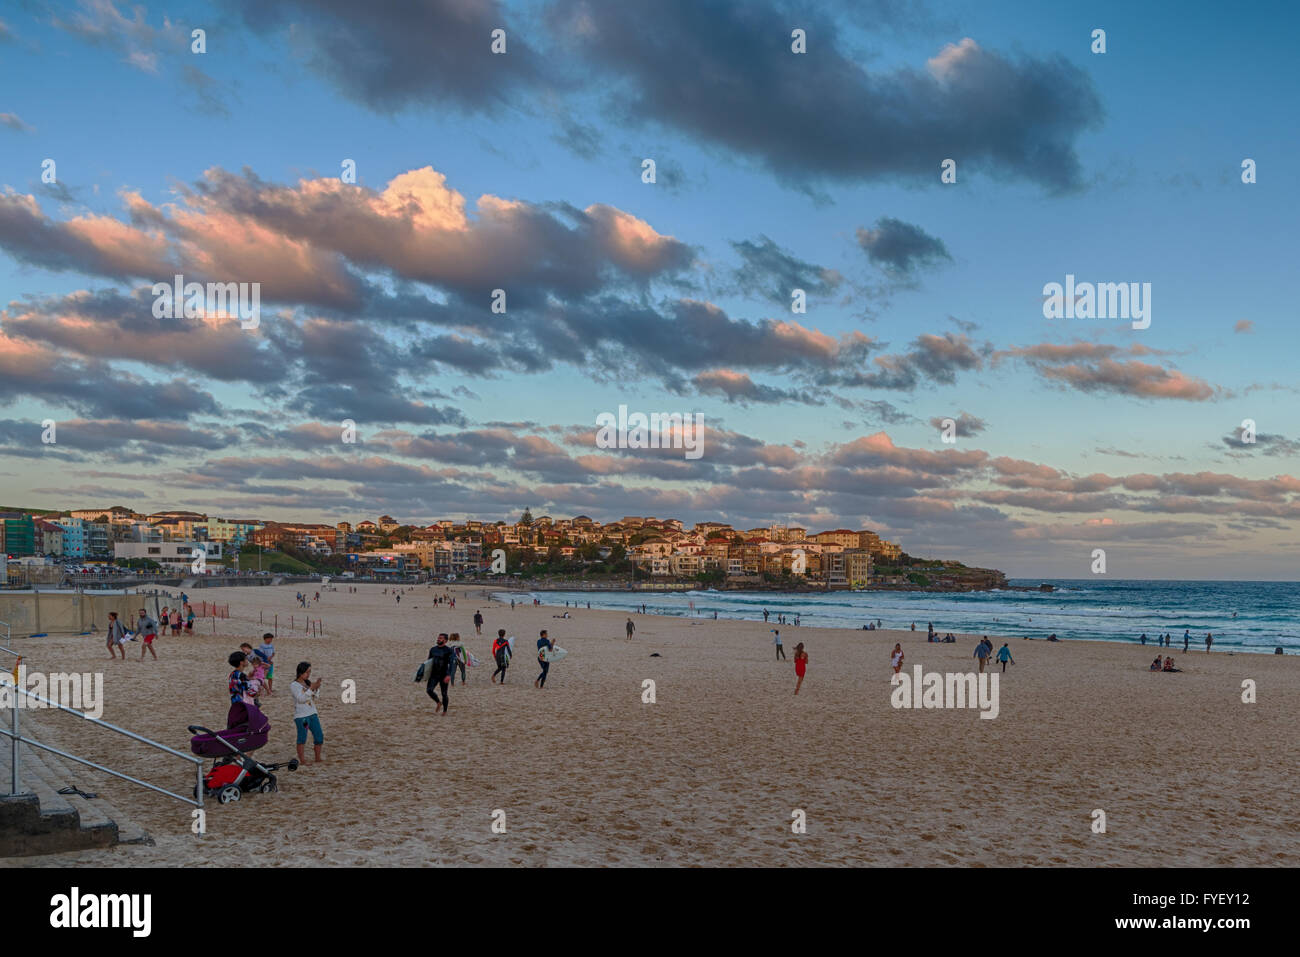 Autumn sunset over Bondi Beach, Sydney, Australia Stock Photo